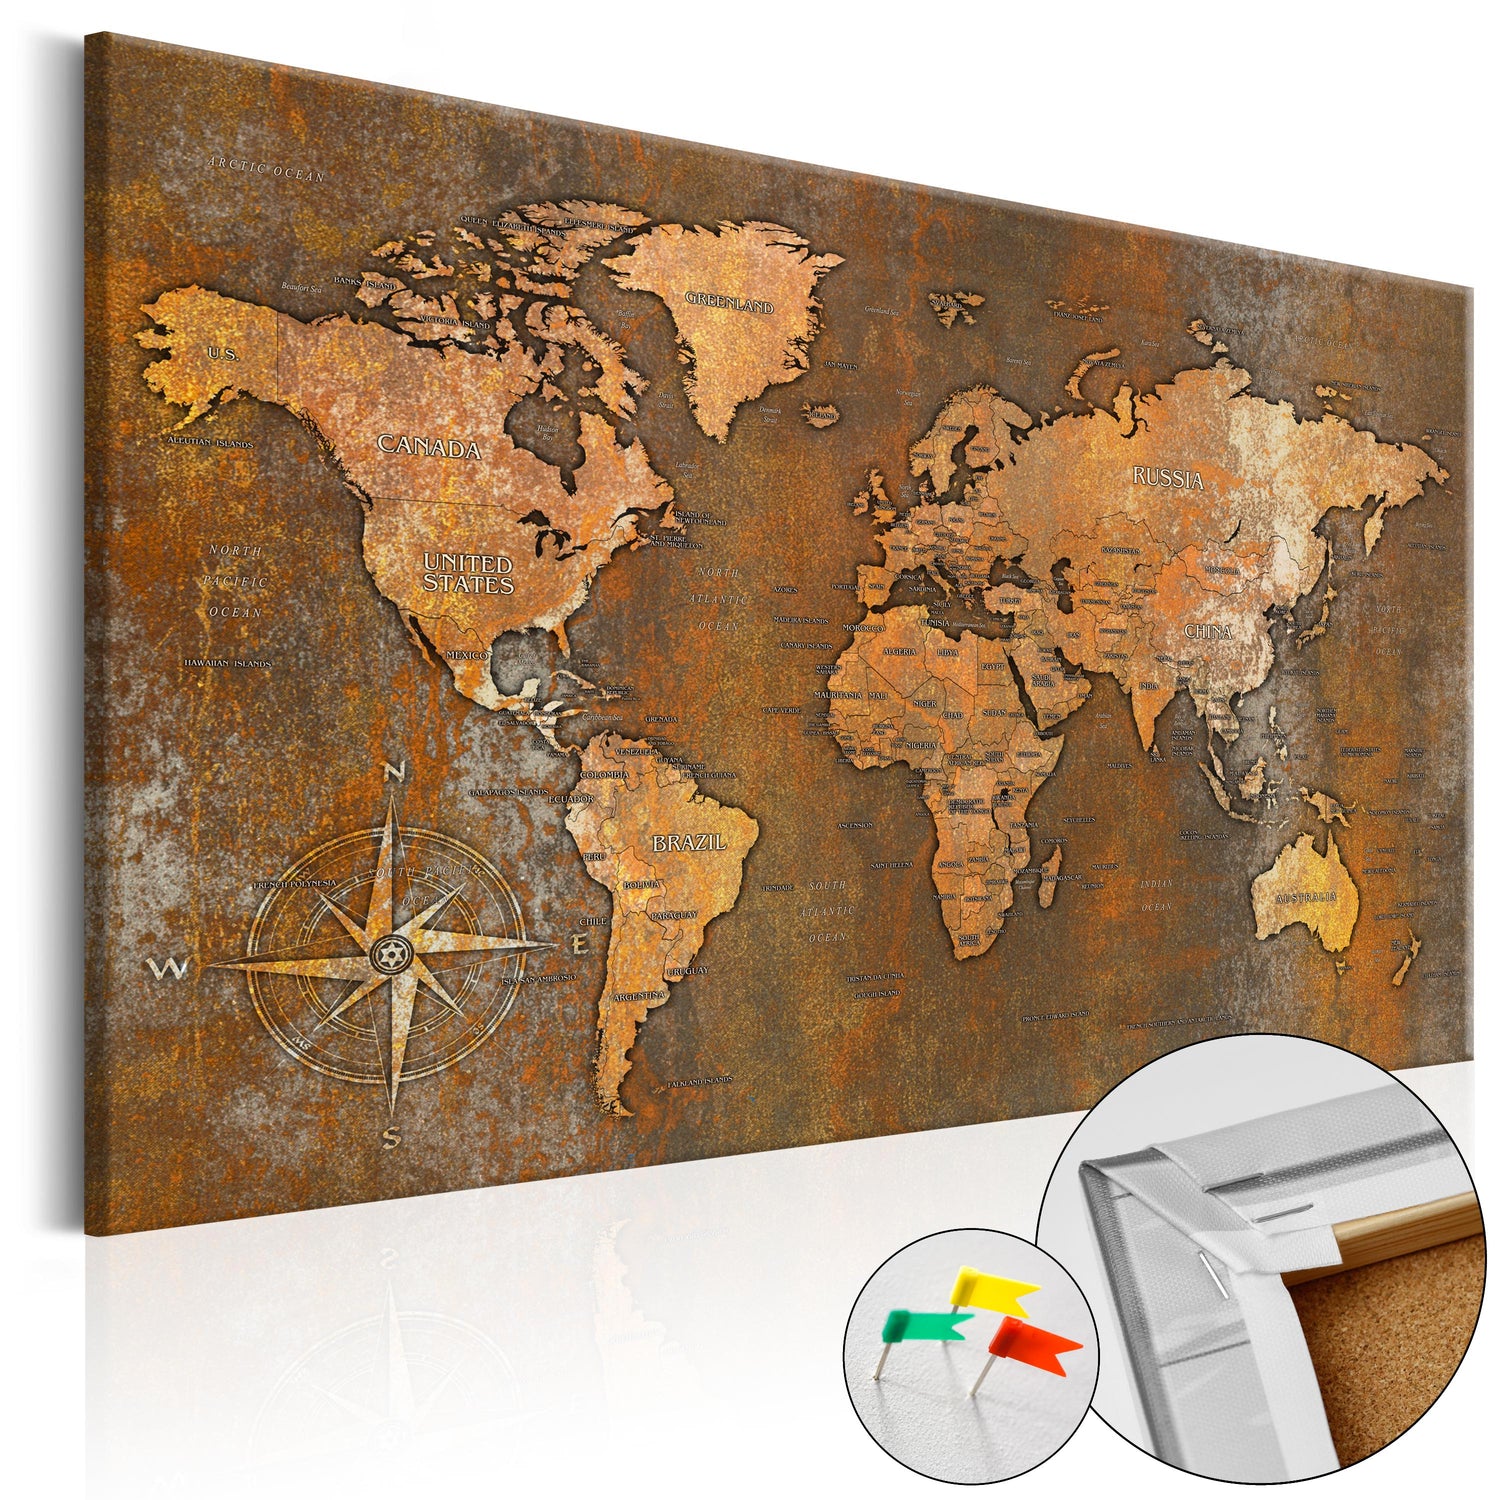 Pinnwand - Weltkarte Rusty World - WELTKARTEN24